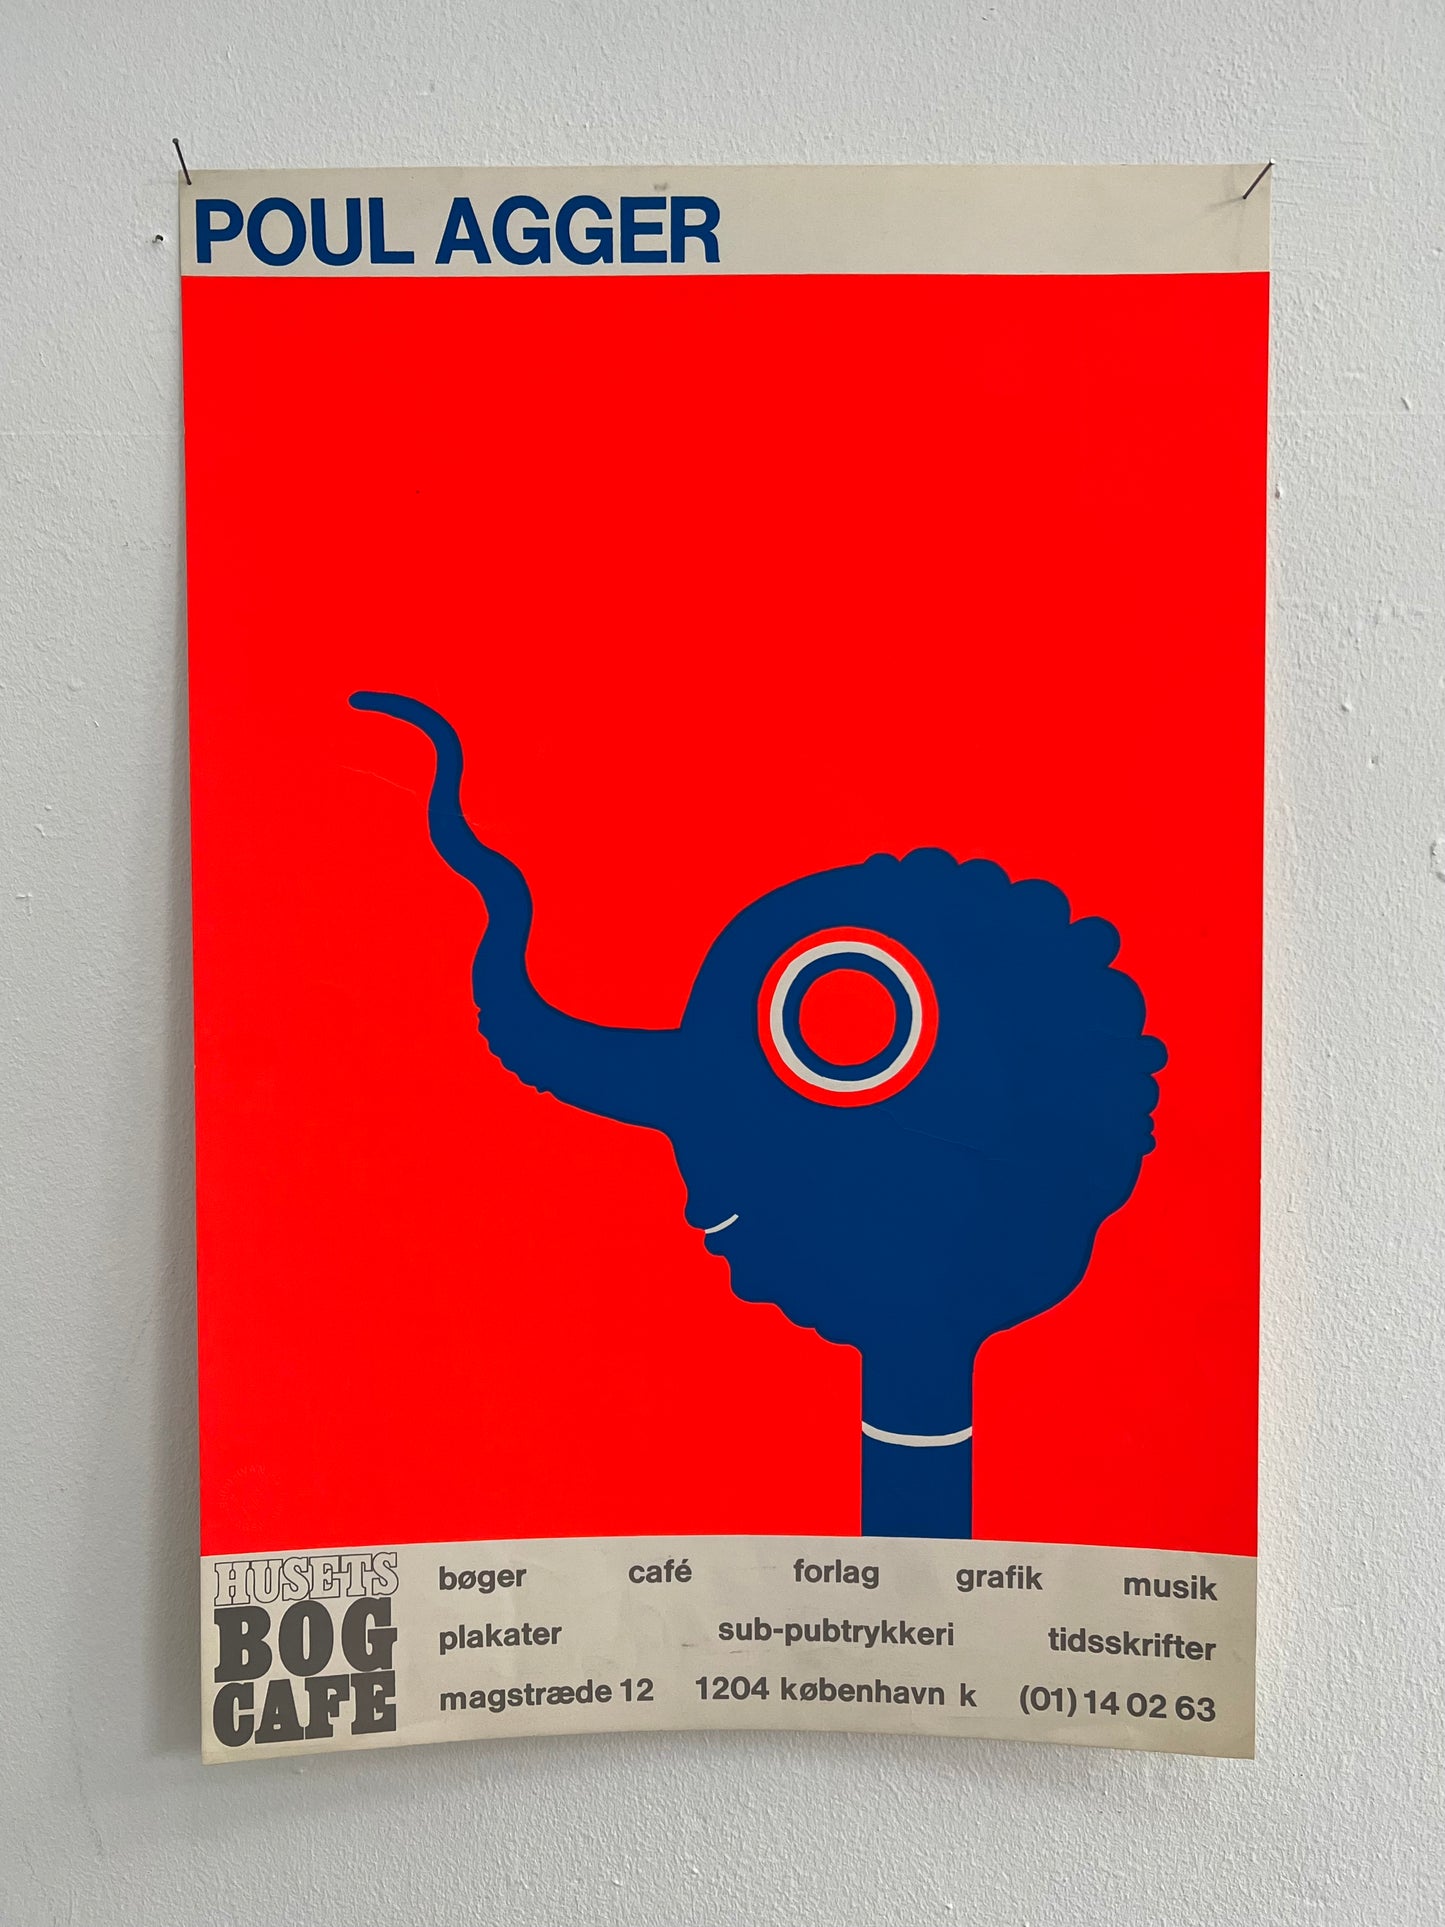 Poul Agger. “Husets bogcafé”